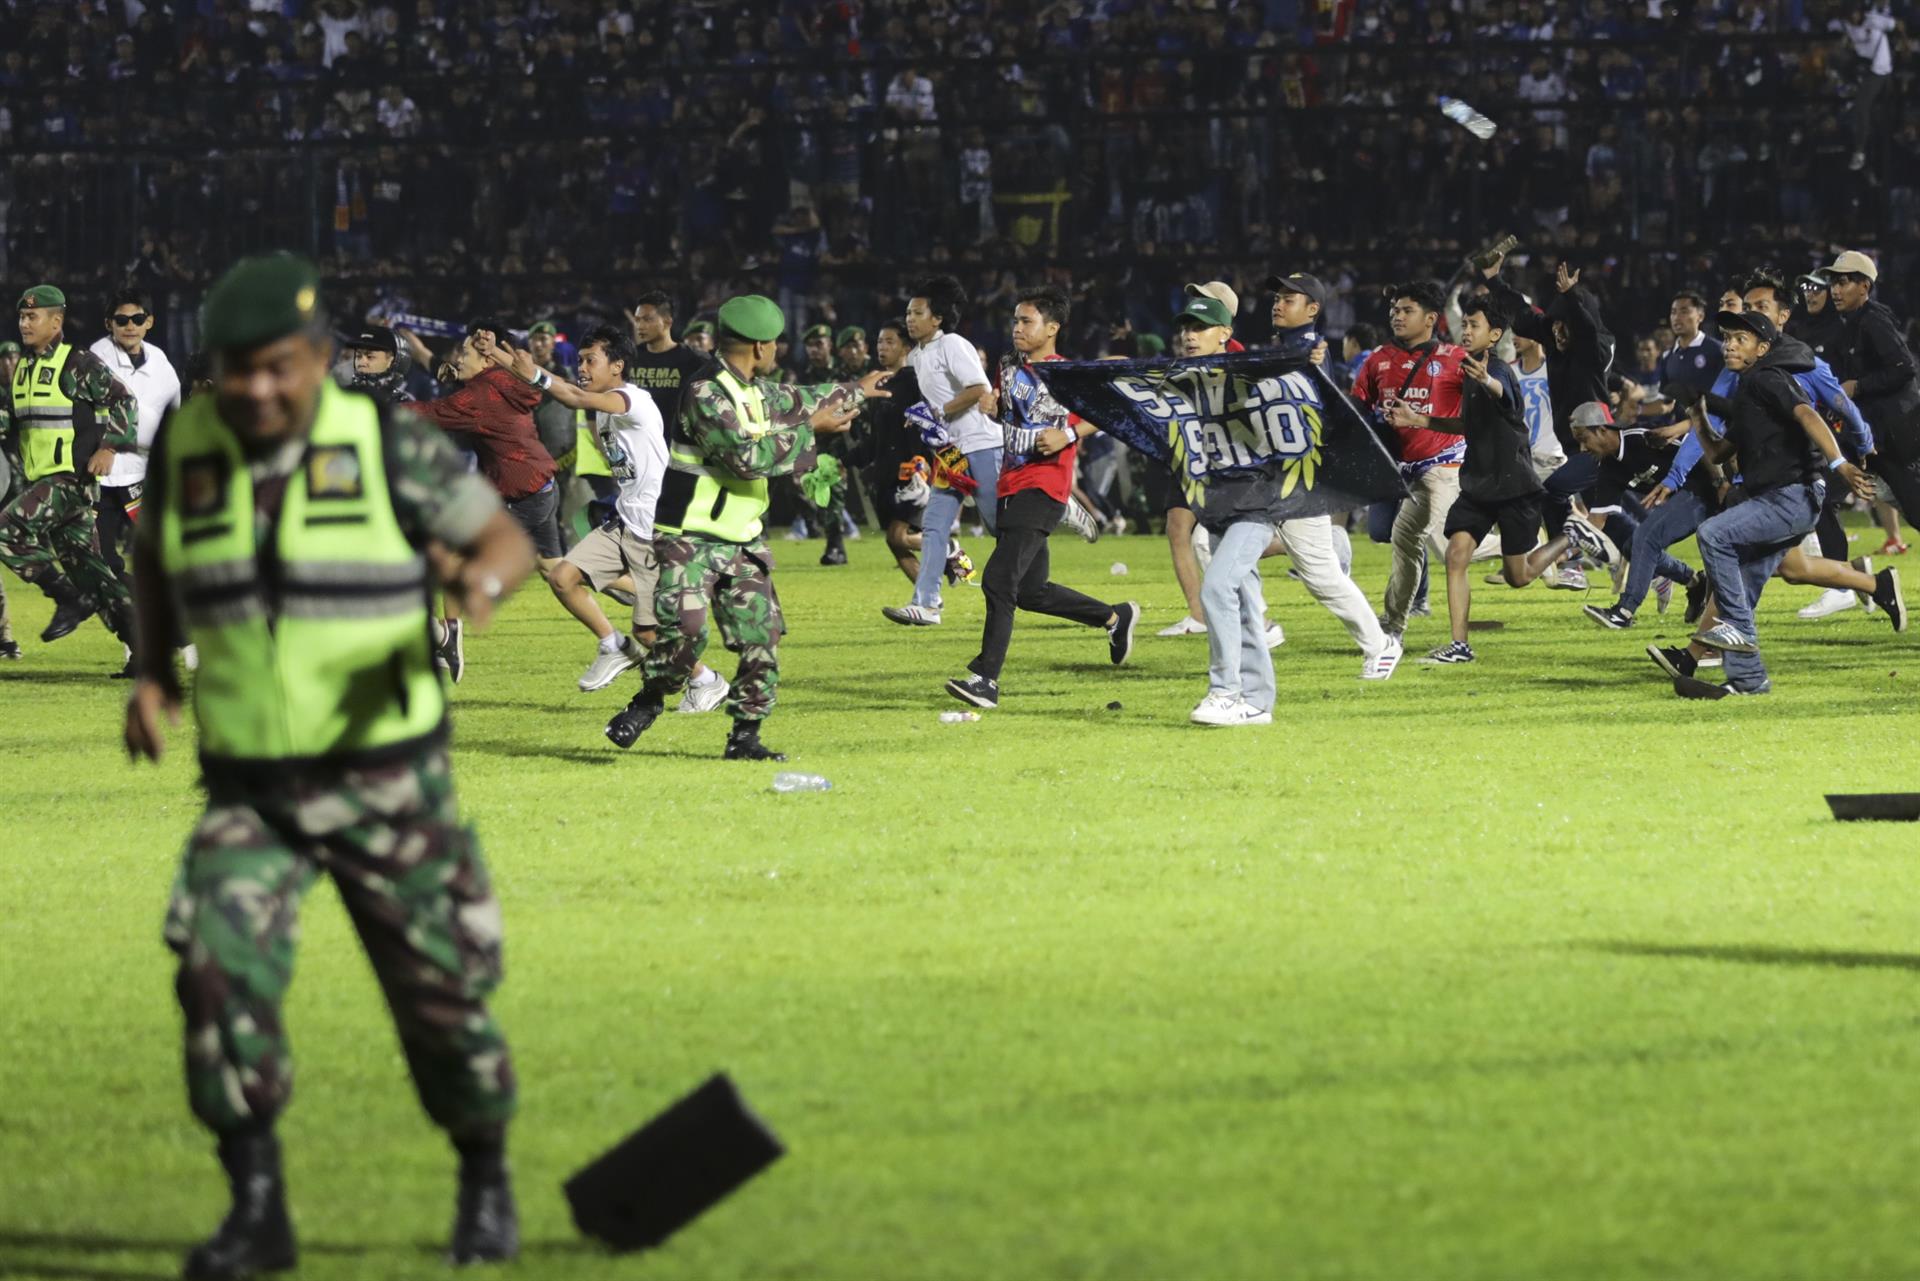 Almenys 174 morts a Indonèsia durant una batalla campal en un partit de futbol